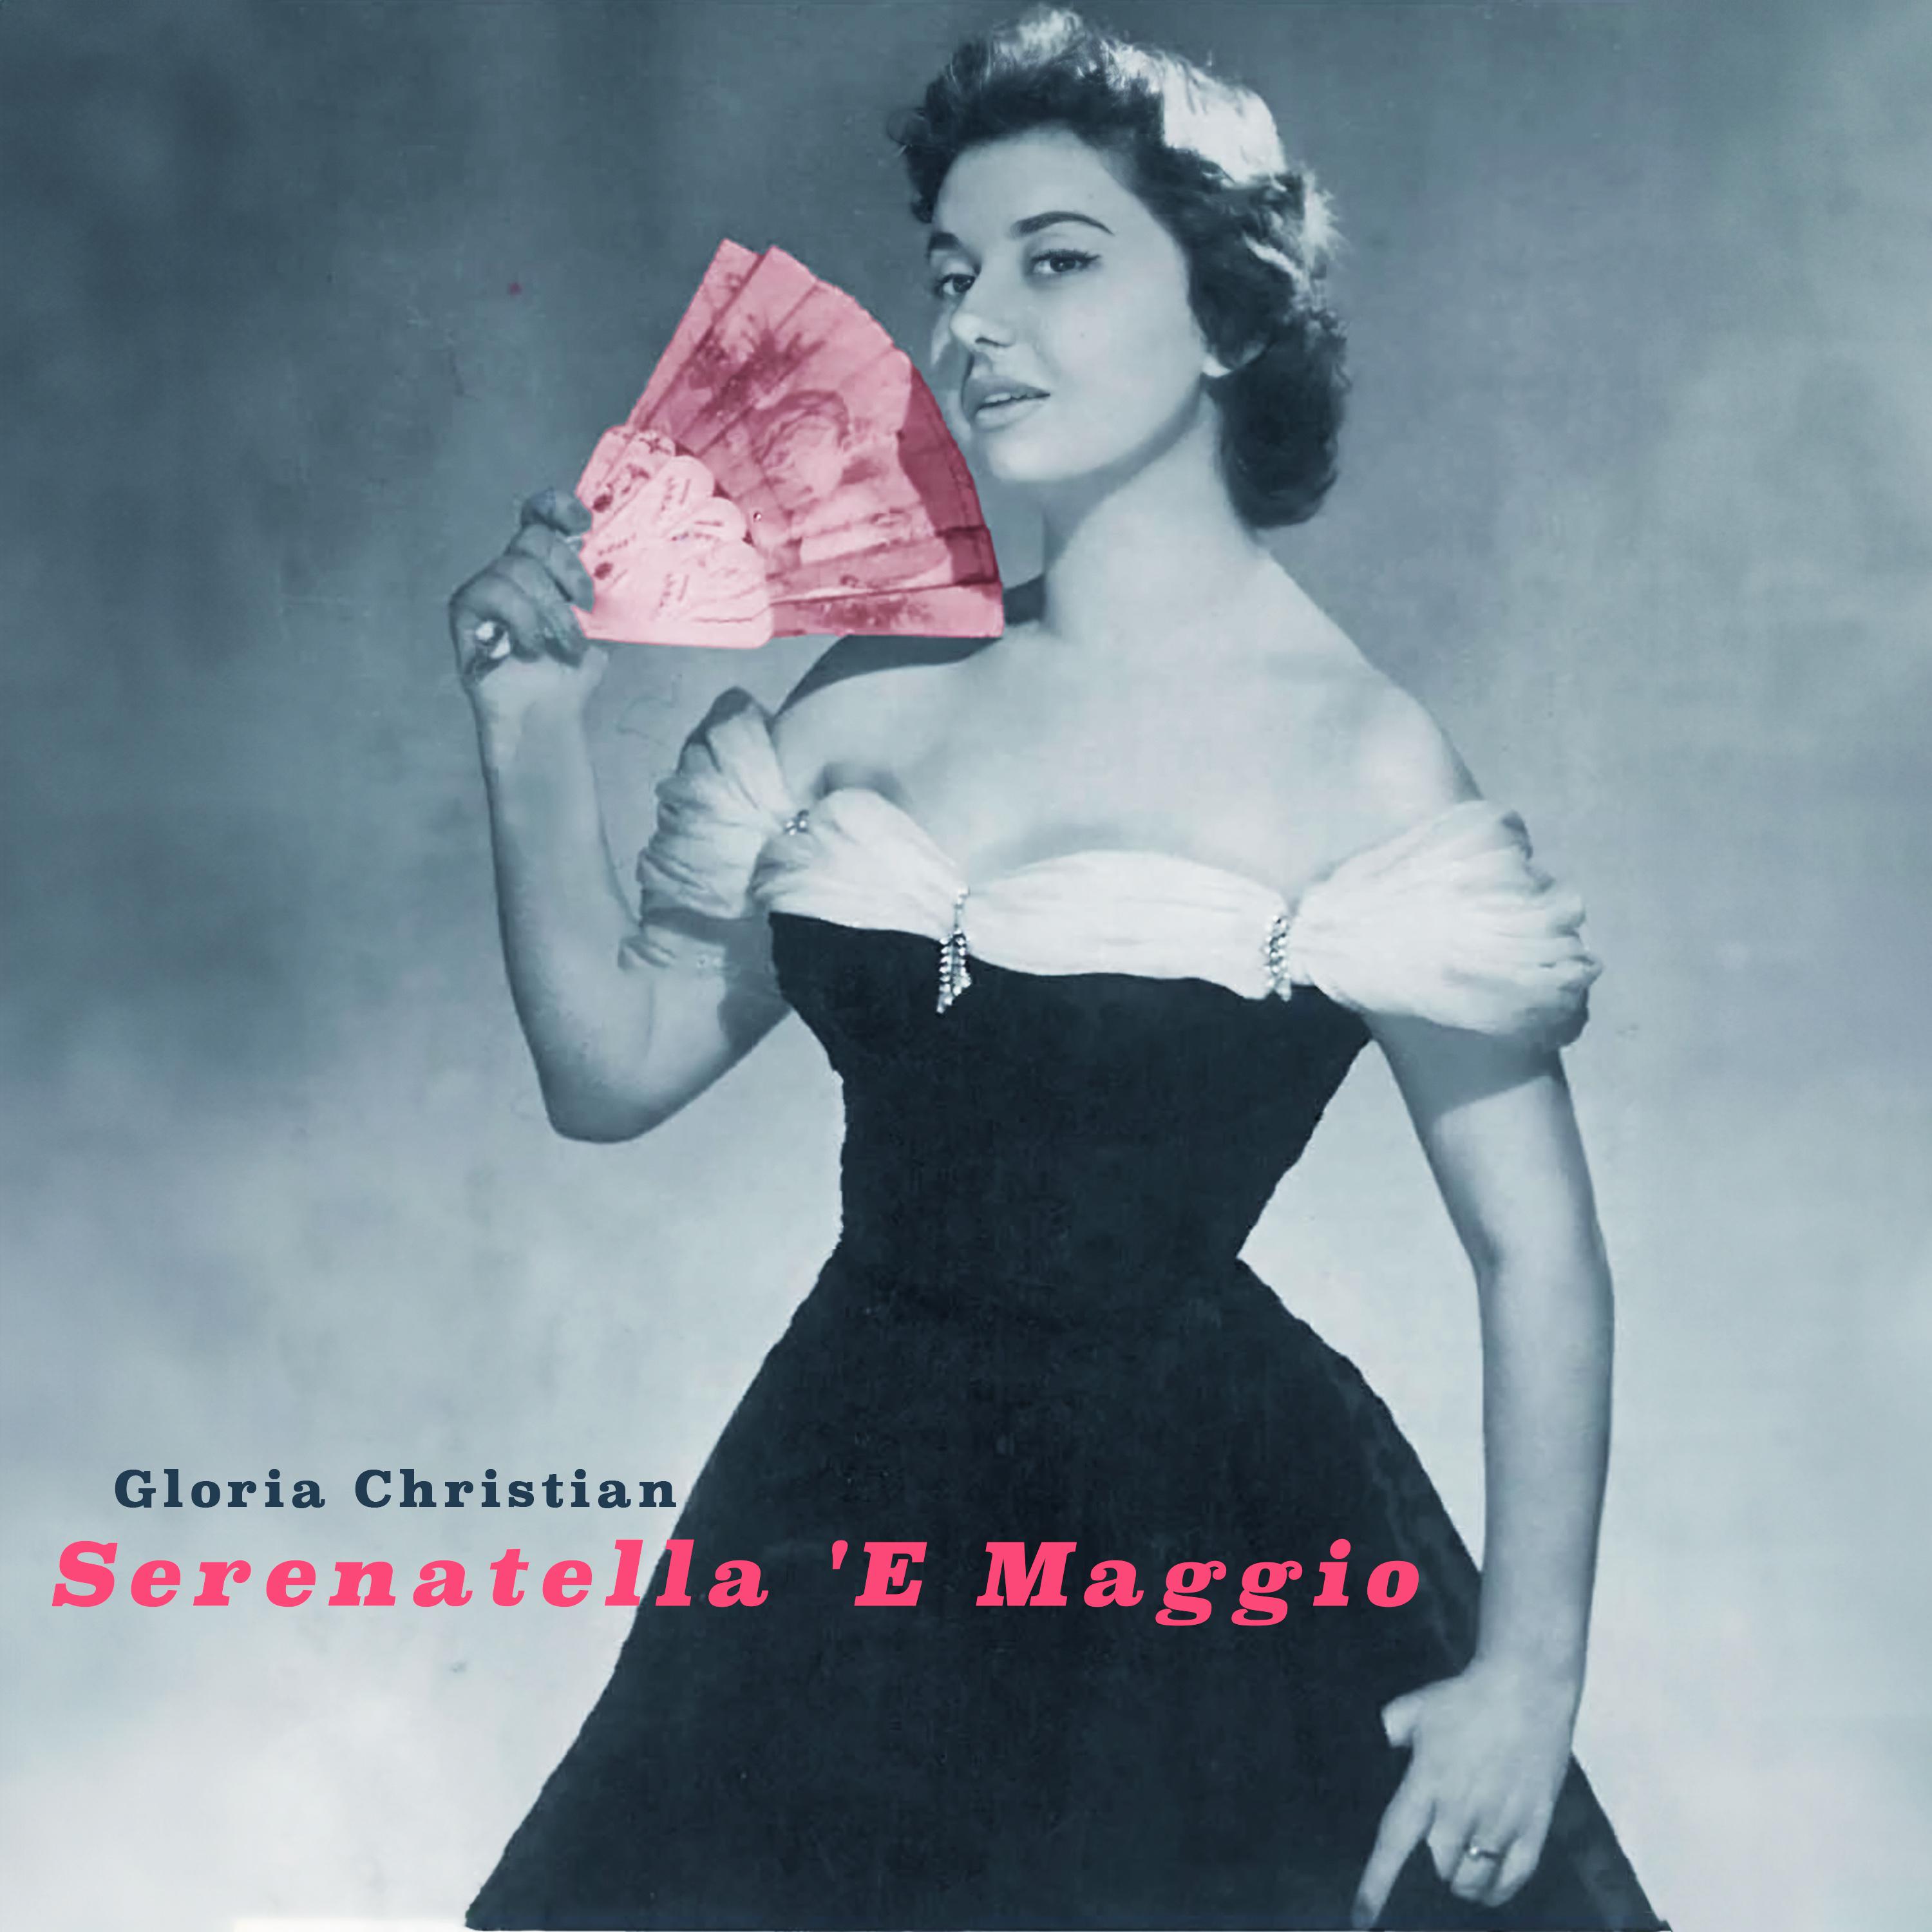 Gloria Christian - Serenatella 'e maggio